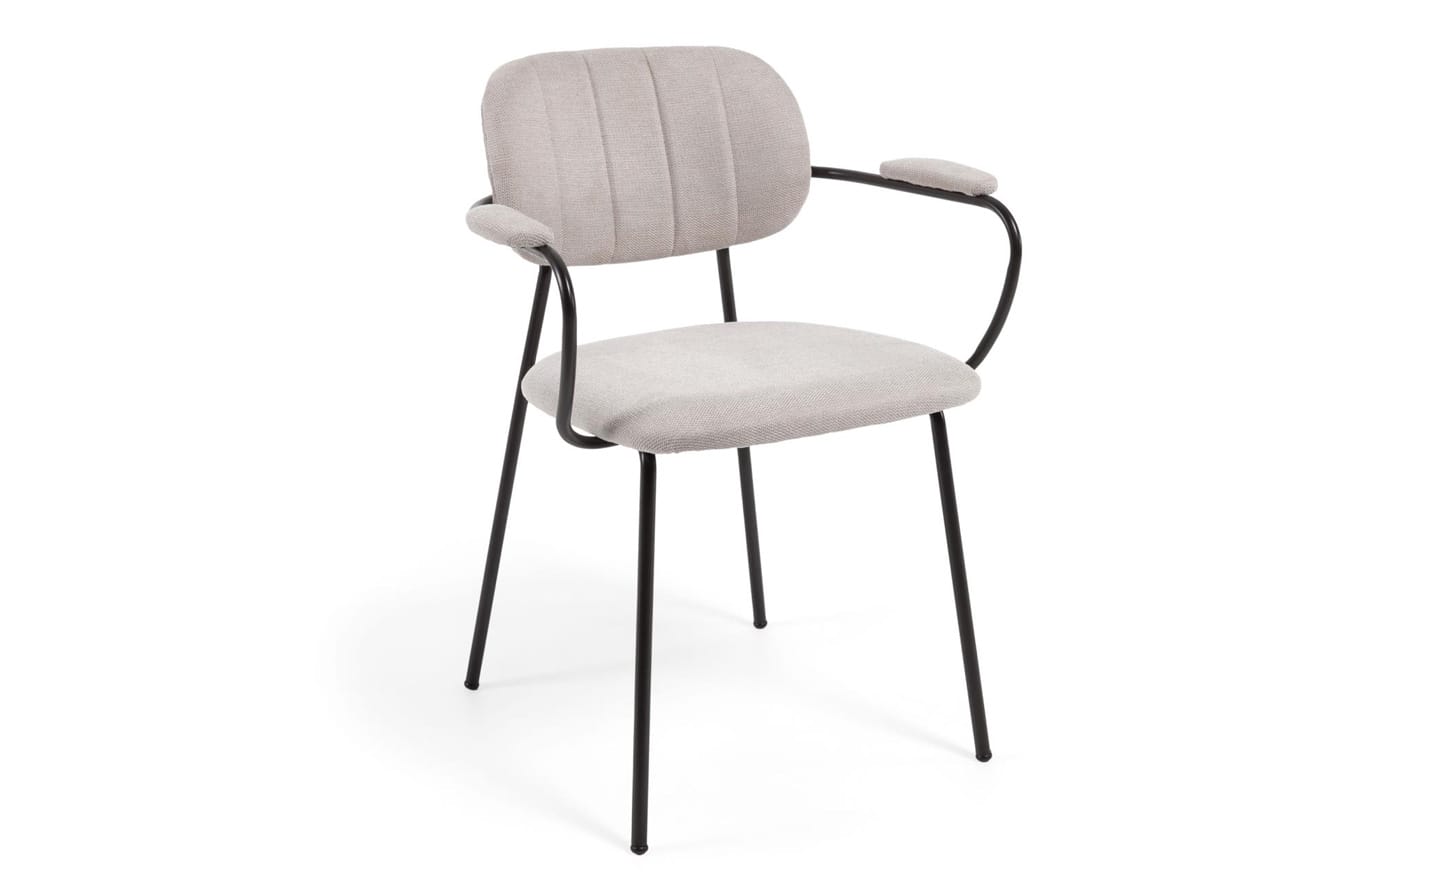 Cadeira Empilhável Auxtina Bege, com braços em tecido chenille na cor bege. Estrutura de metal com acabamento pintado preto mate para um design elegante e funcional.